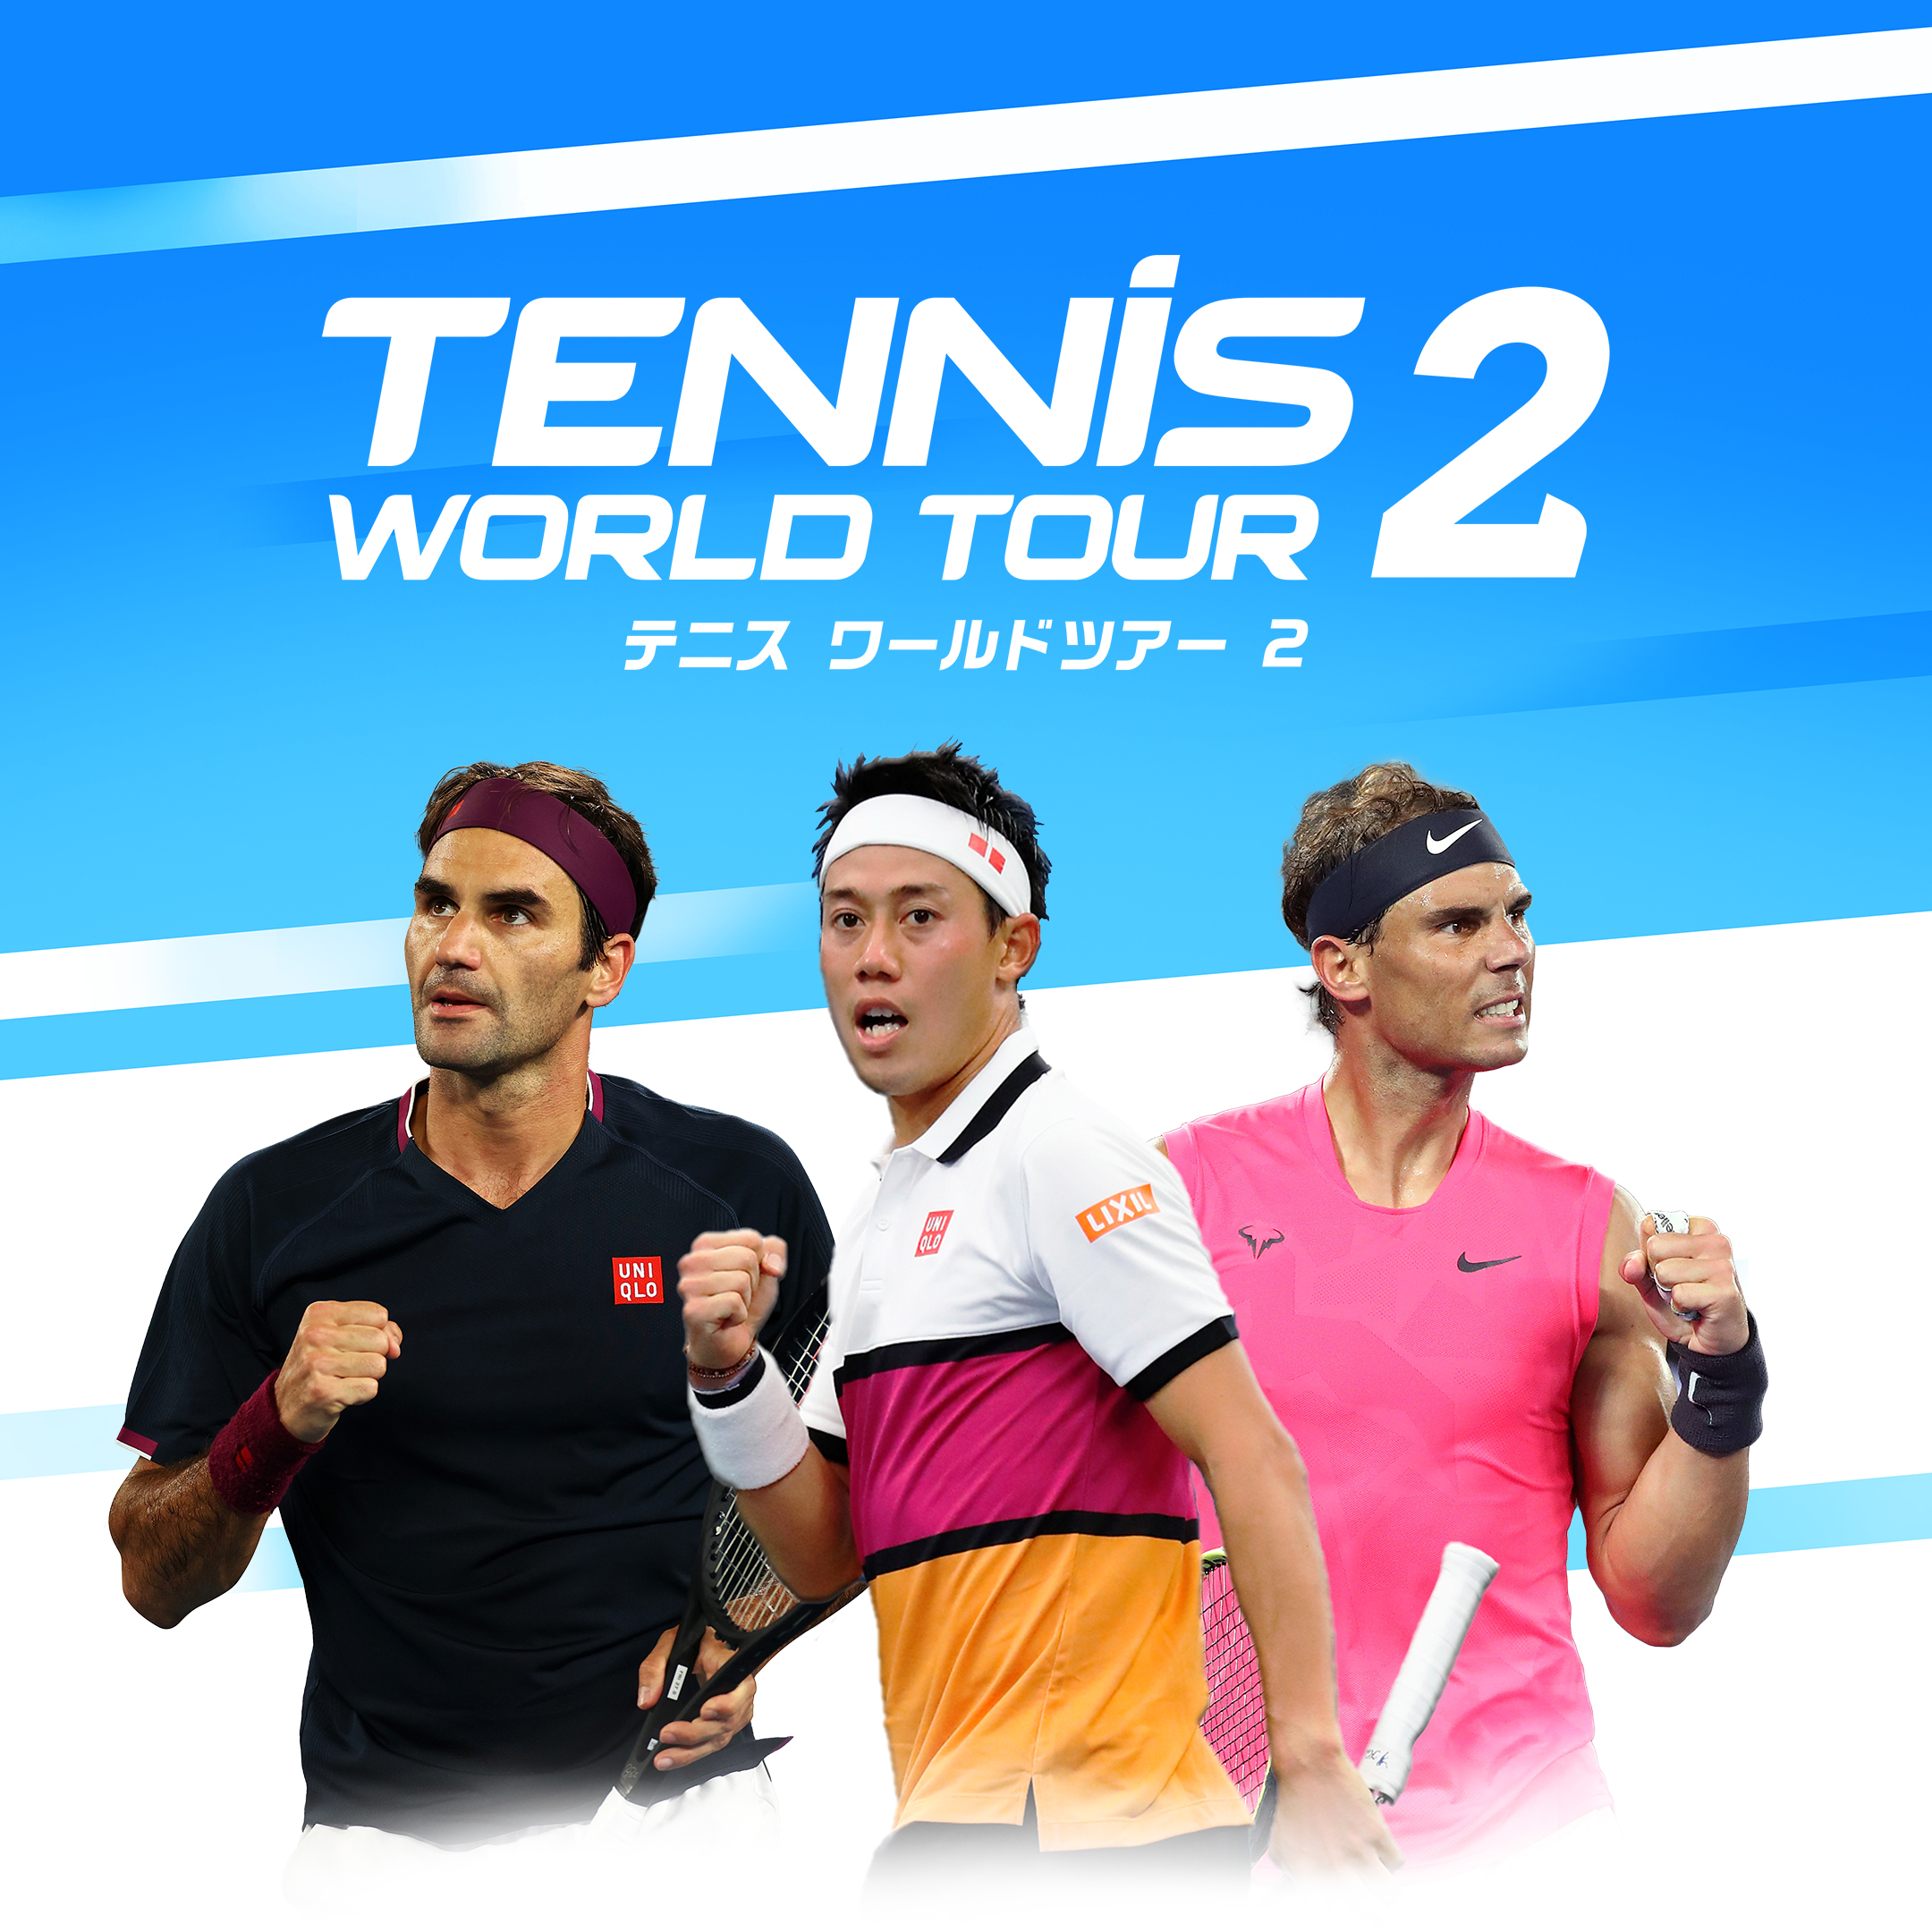 テニス ワールドツアー 2 - オーイズミ・アミュージオ